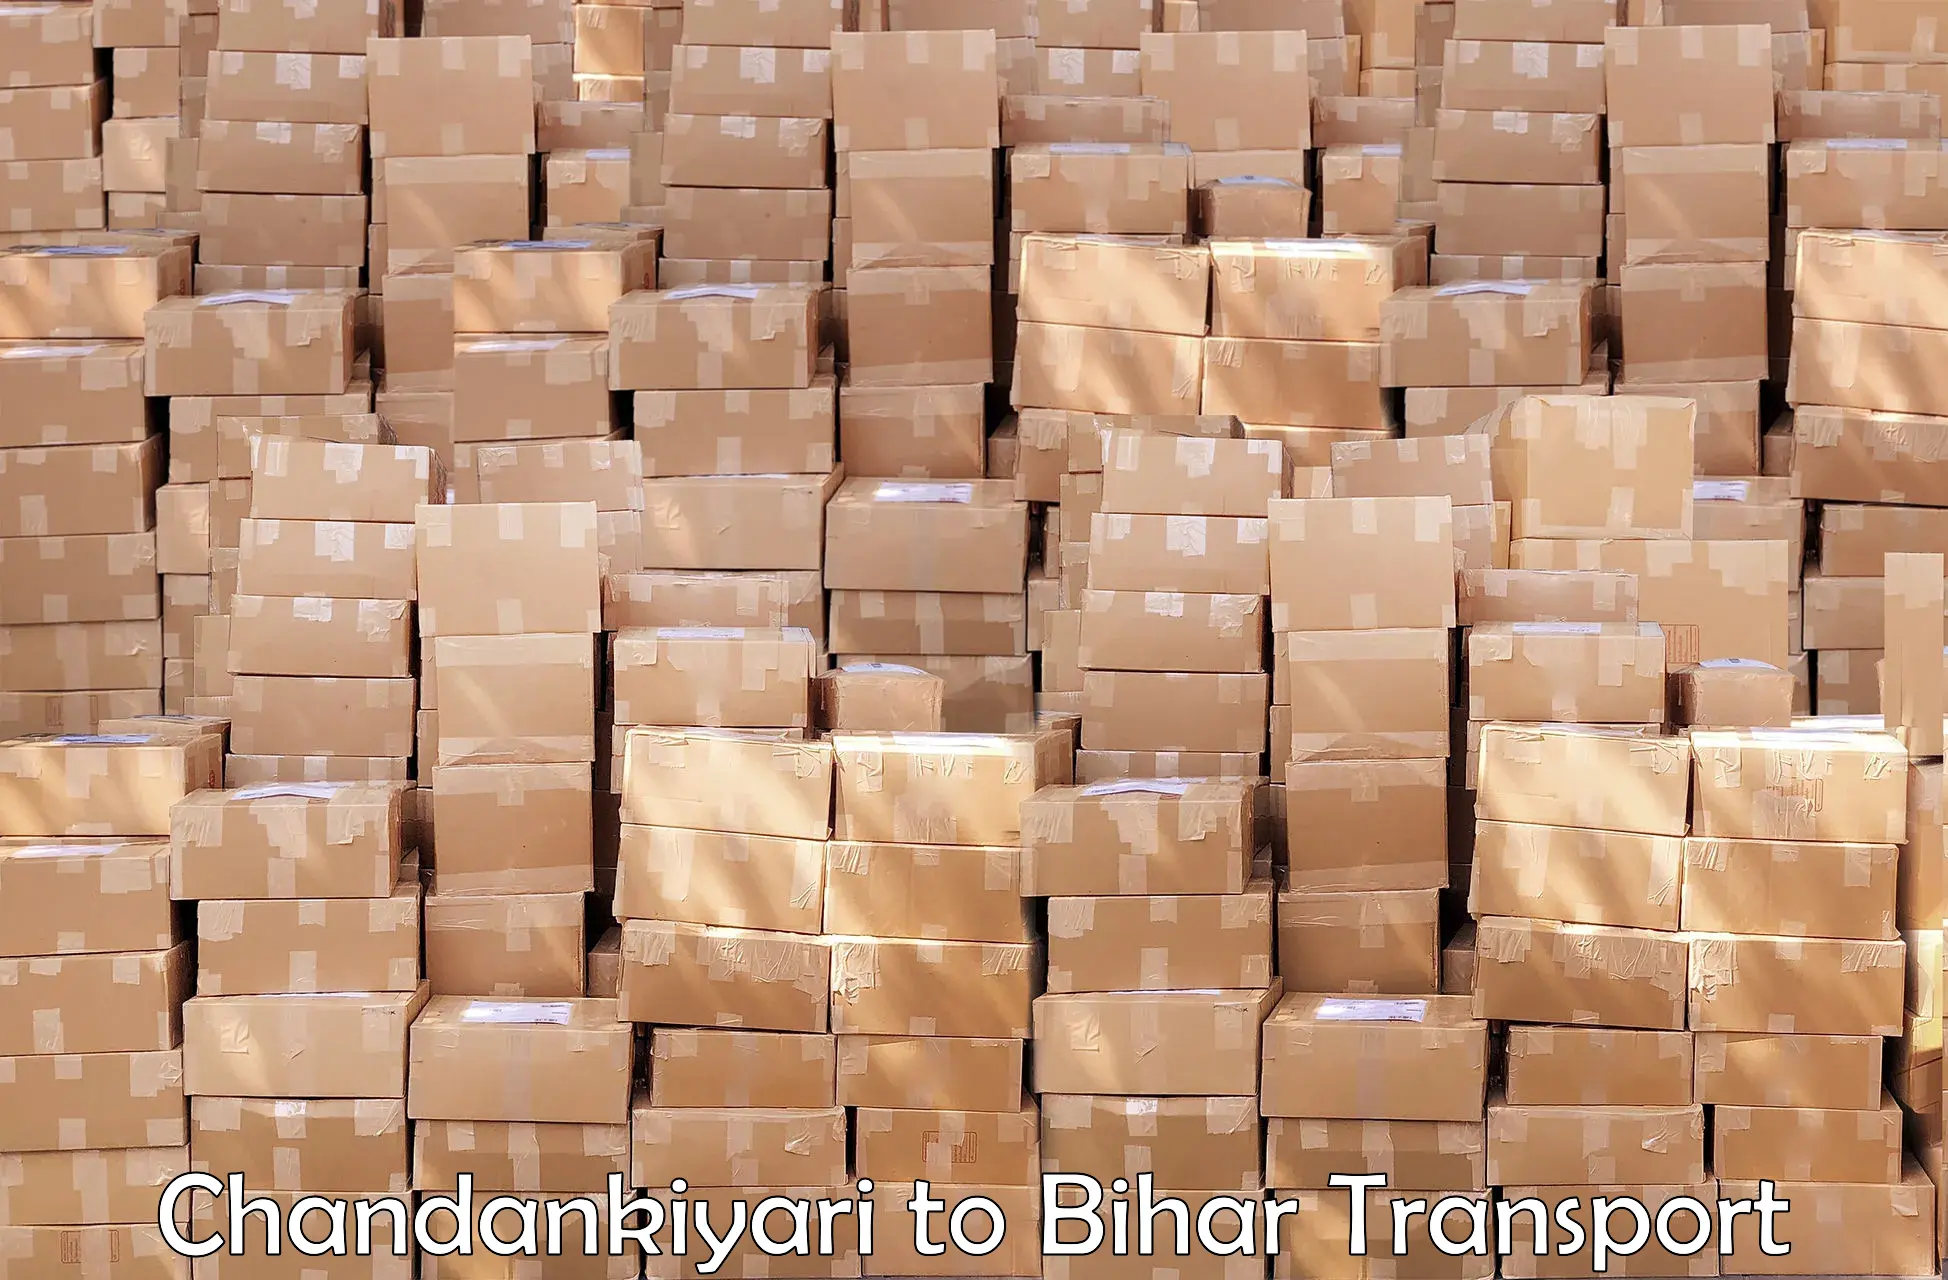 Container transport service Chandankiyari to Sangrampur